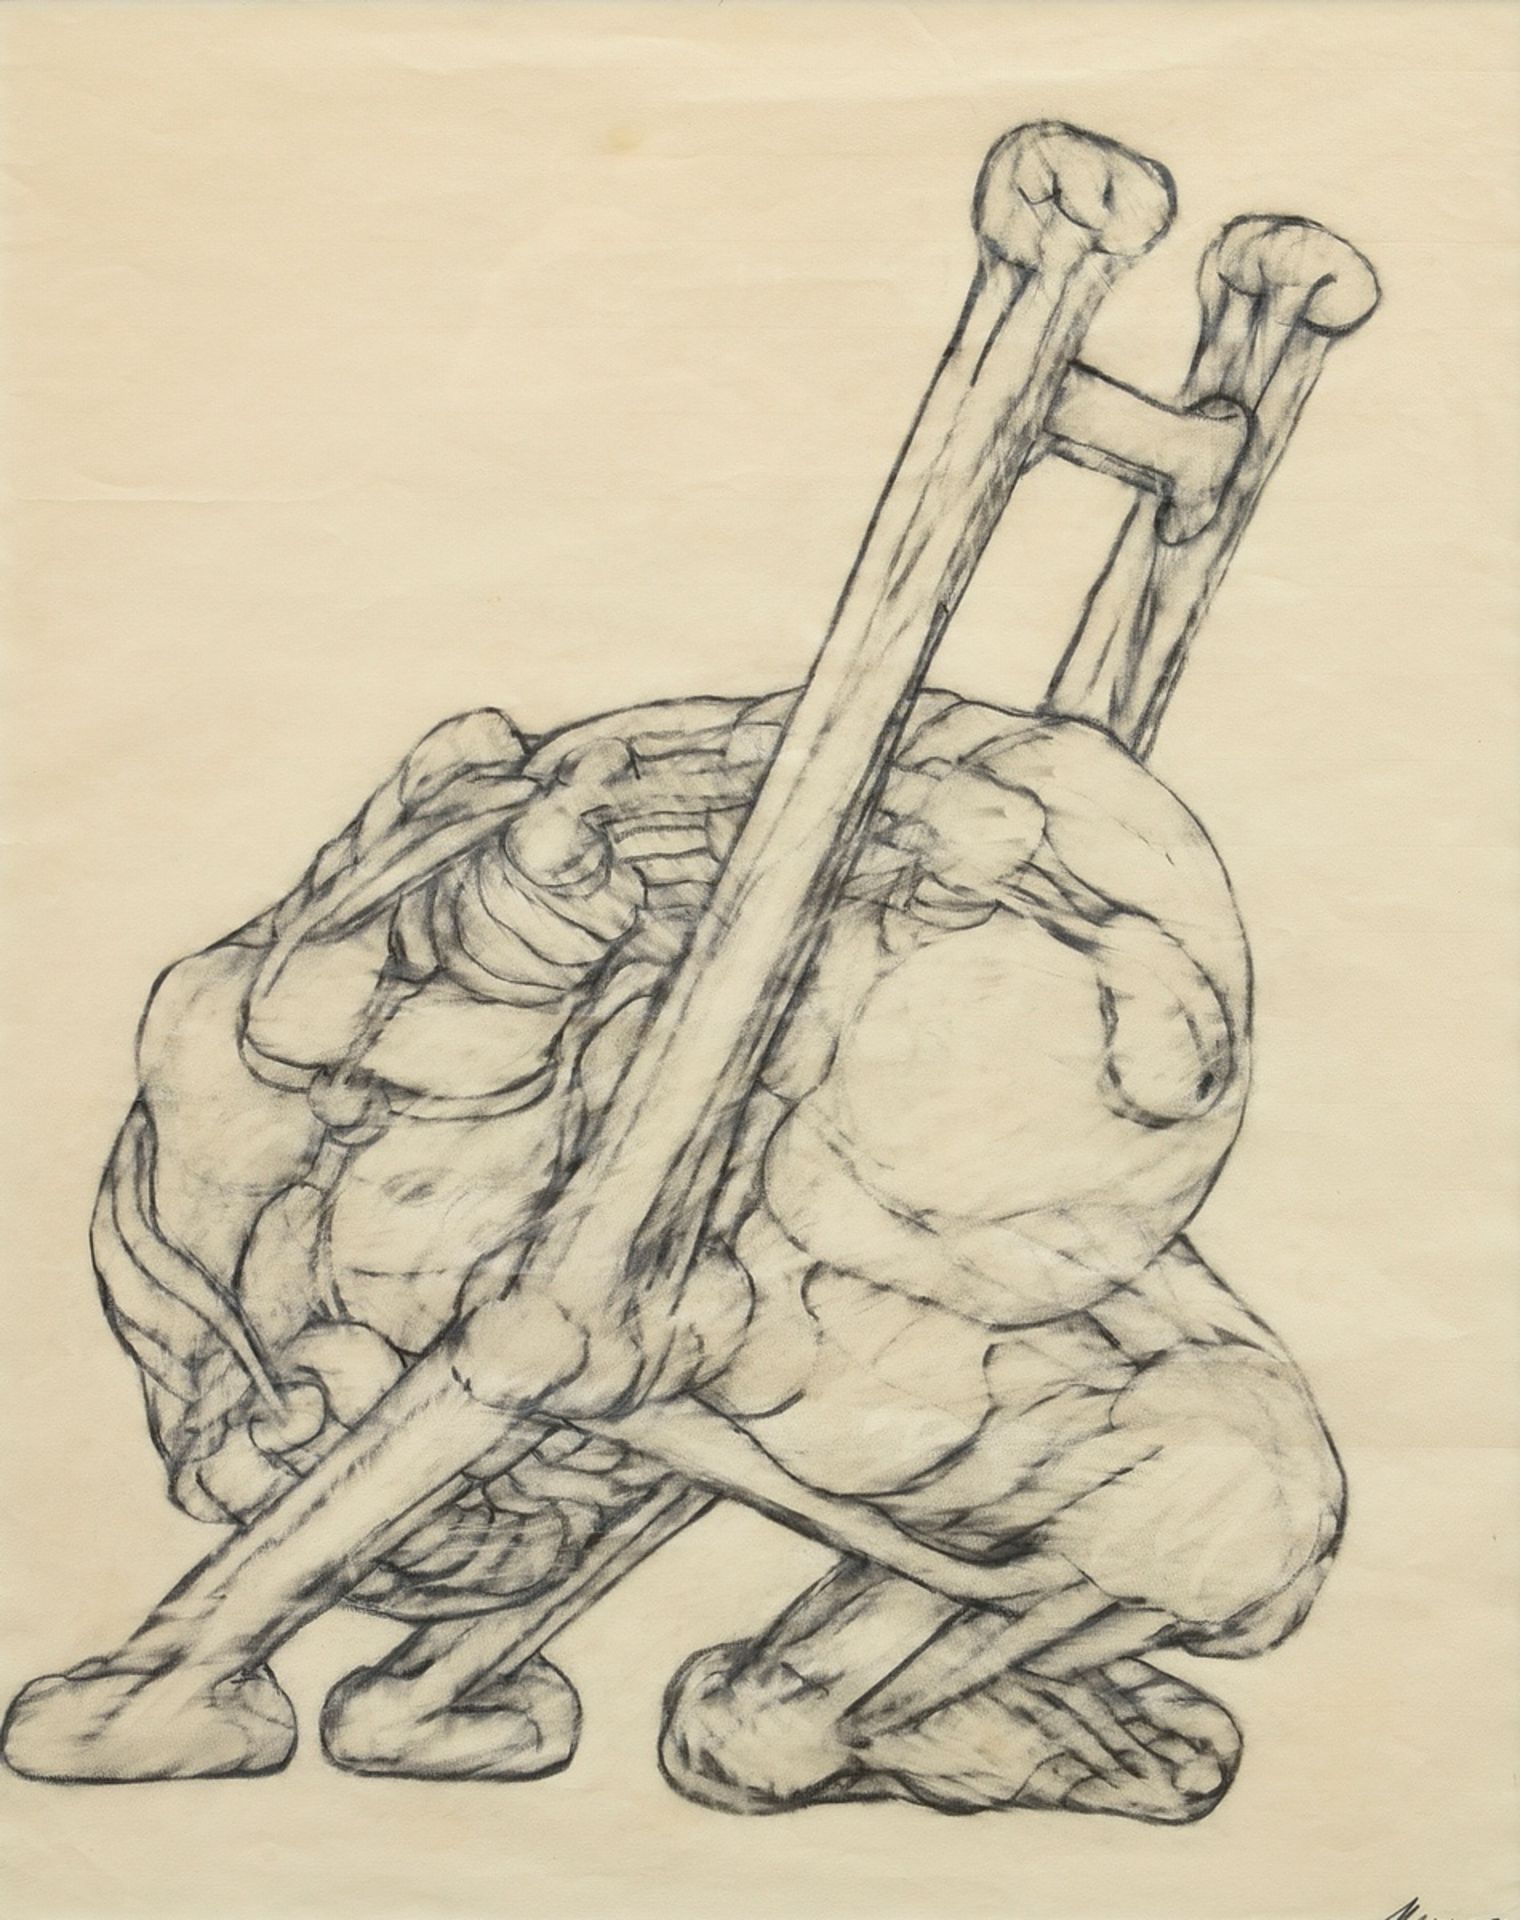 Hoflehner, Rudolf (1916-1995) "Entwurf für eine Plastik" 1973, u.r. sign./dat., Bleistift, 59x46cm 